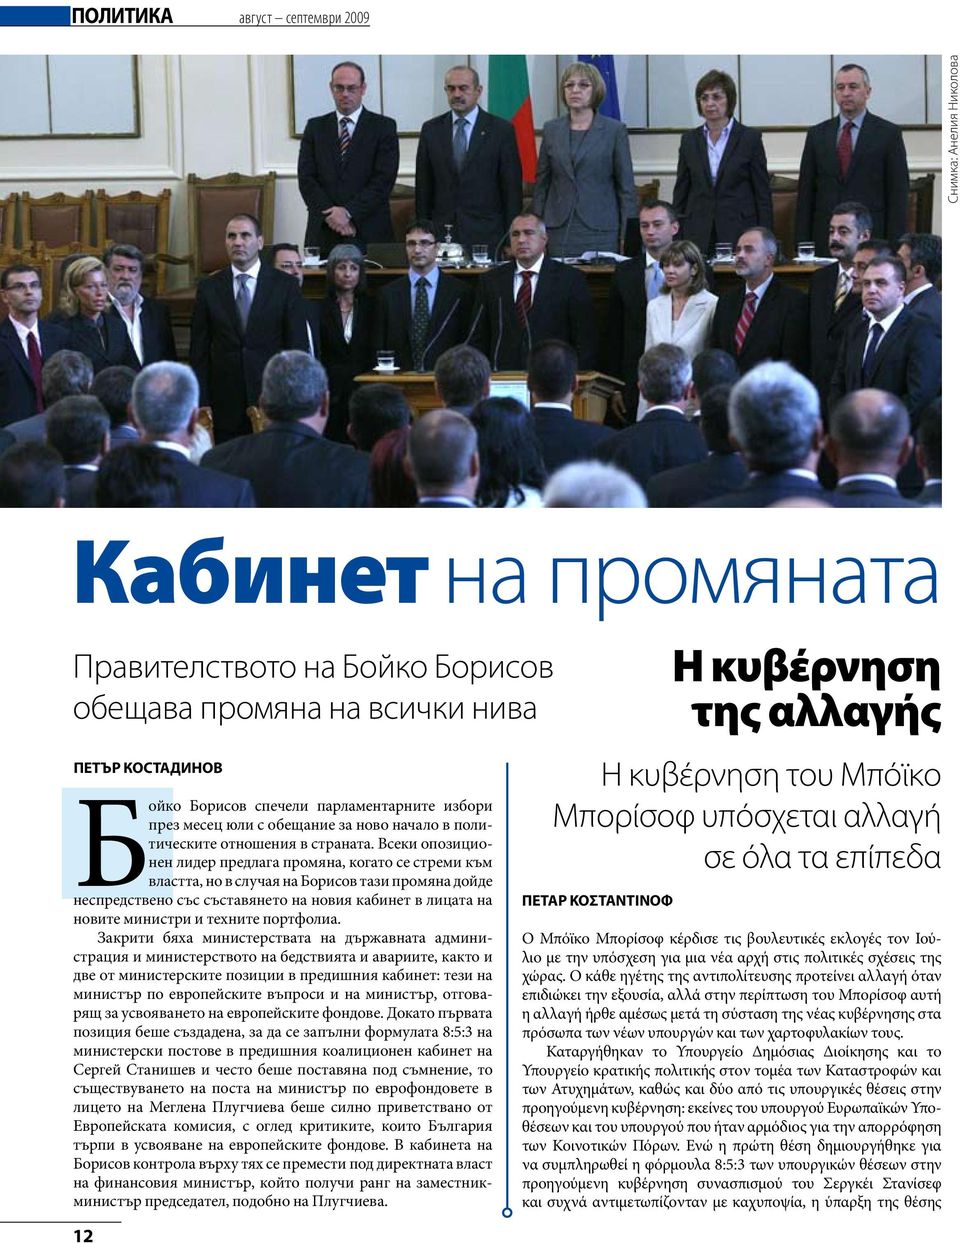 Всеки опозиционен лидер предлага промяна, когато се стреми към властта, но в случая на Борисов тази промяна дойде неспредствено със съставянето на новия кабинет в лицата на новите министри и техните